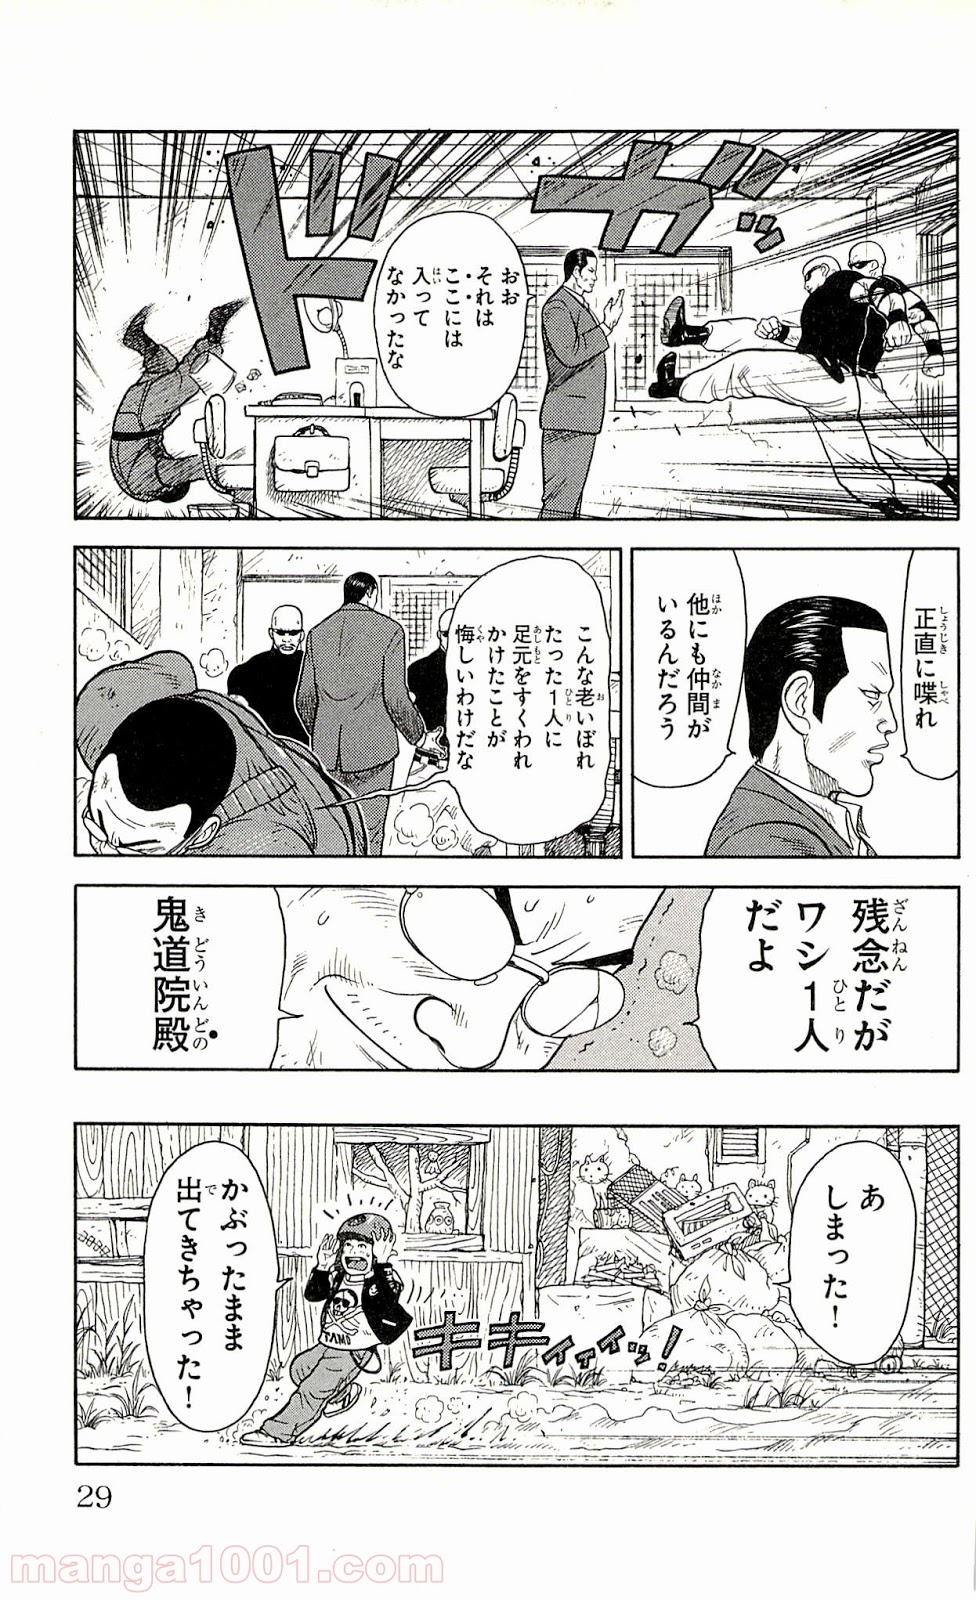 囚人リク Raw 第1話 Manga Raw